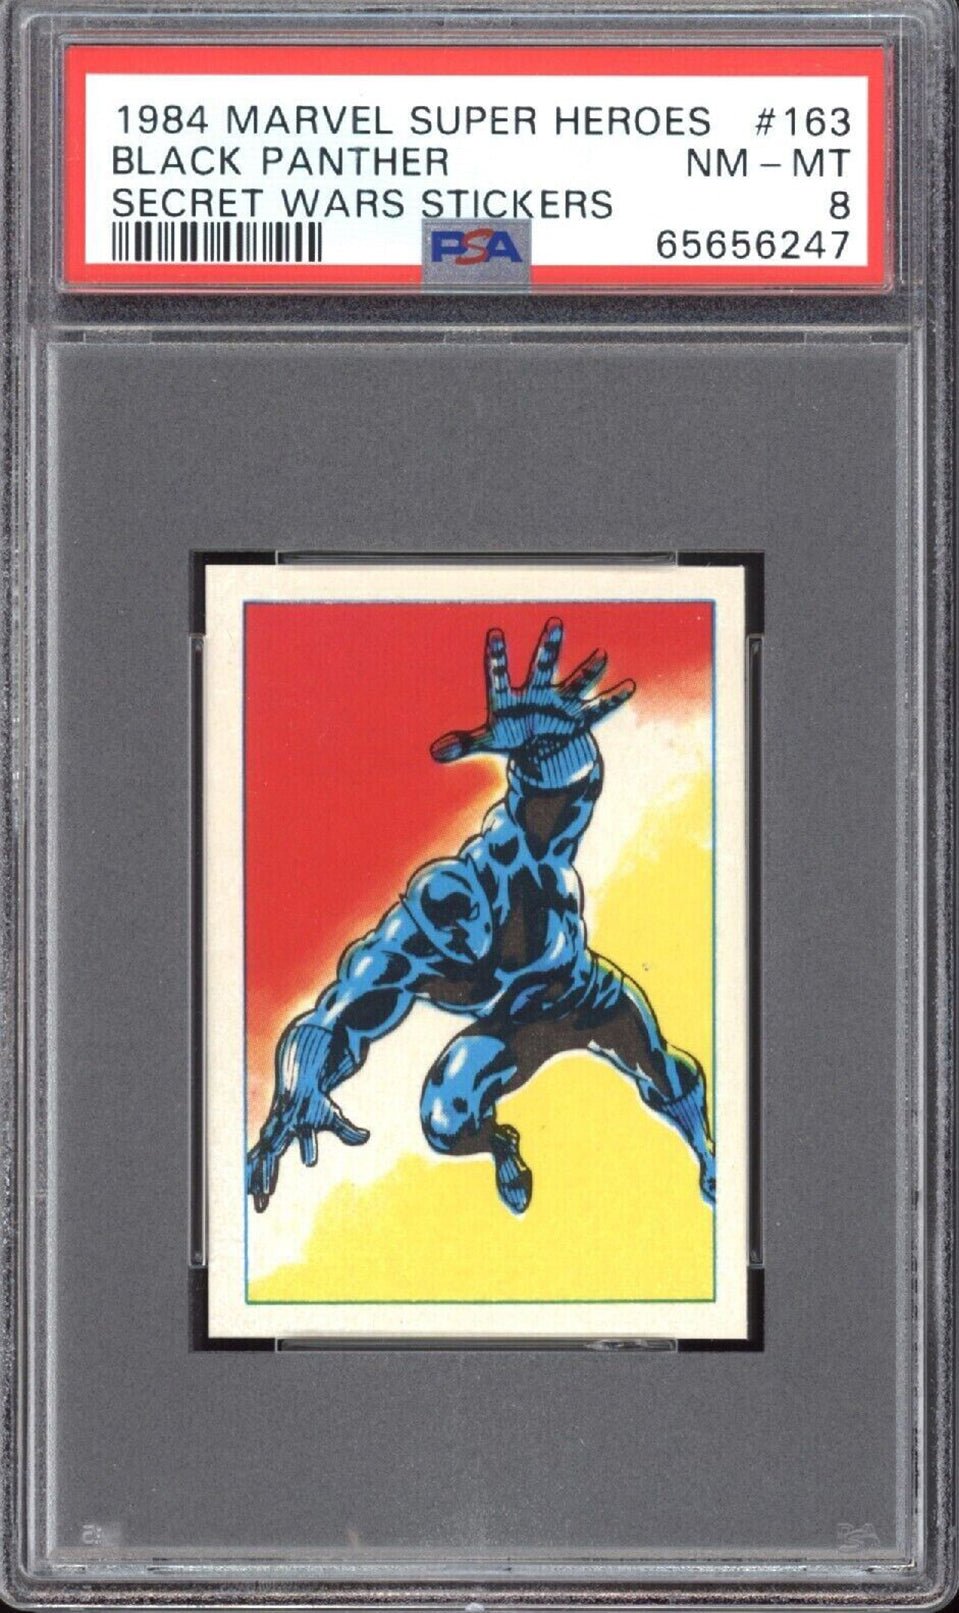 BLACK PANTHER PSA 8 1984 Marvel Super Heroes Secret Wars Sticker #163 C3 Marvel Graded Cards Sticker - Hobby Gems